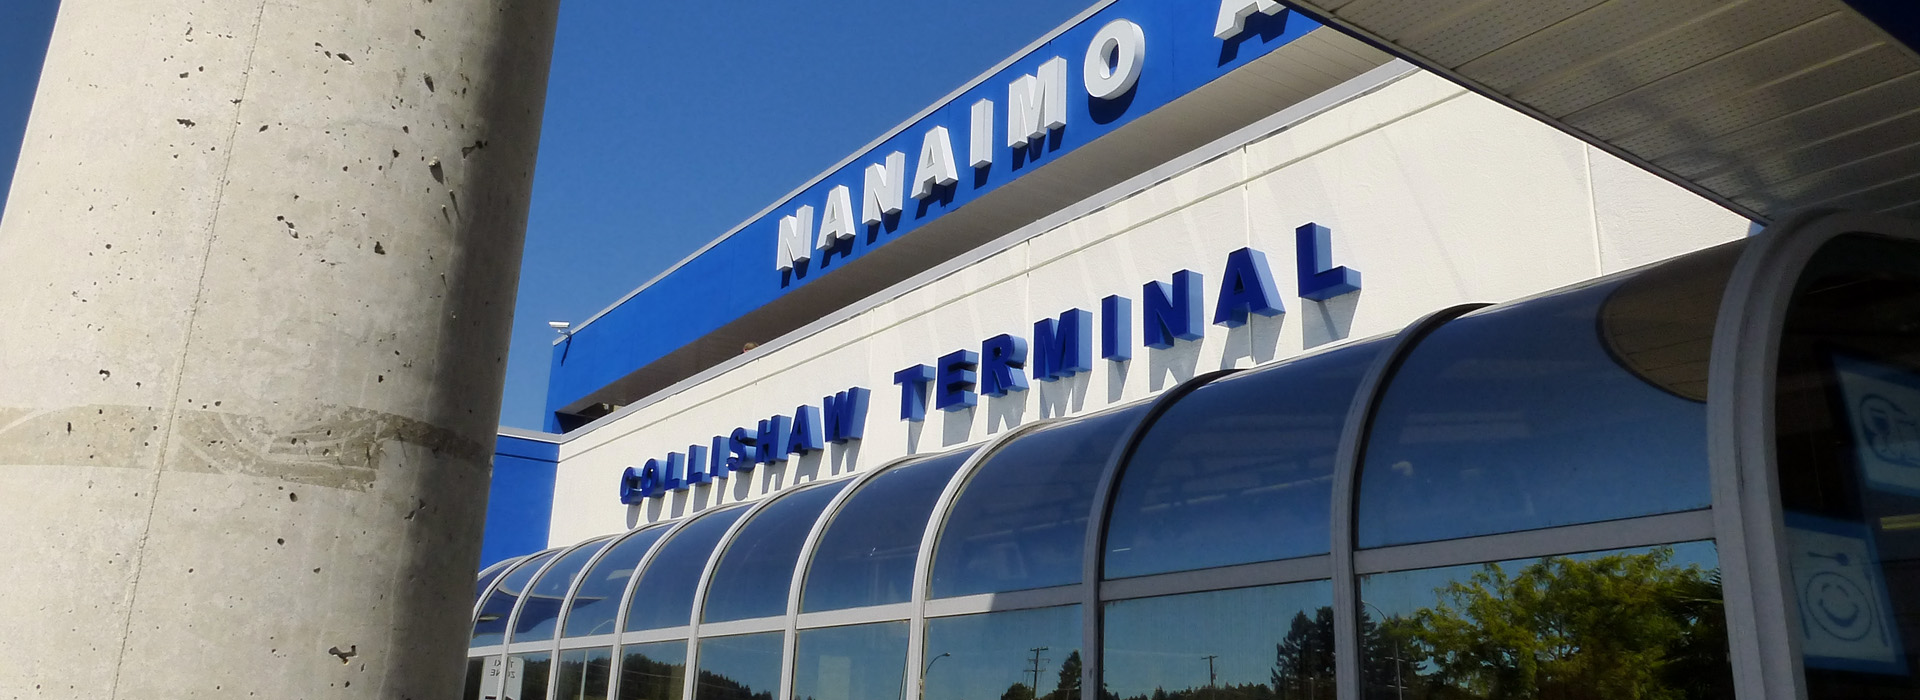 Nanaimo Airport